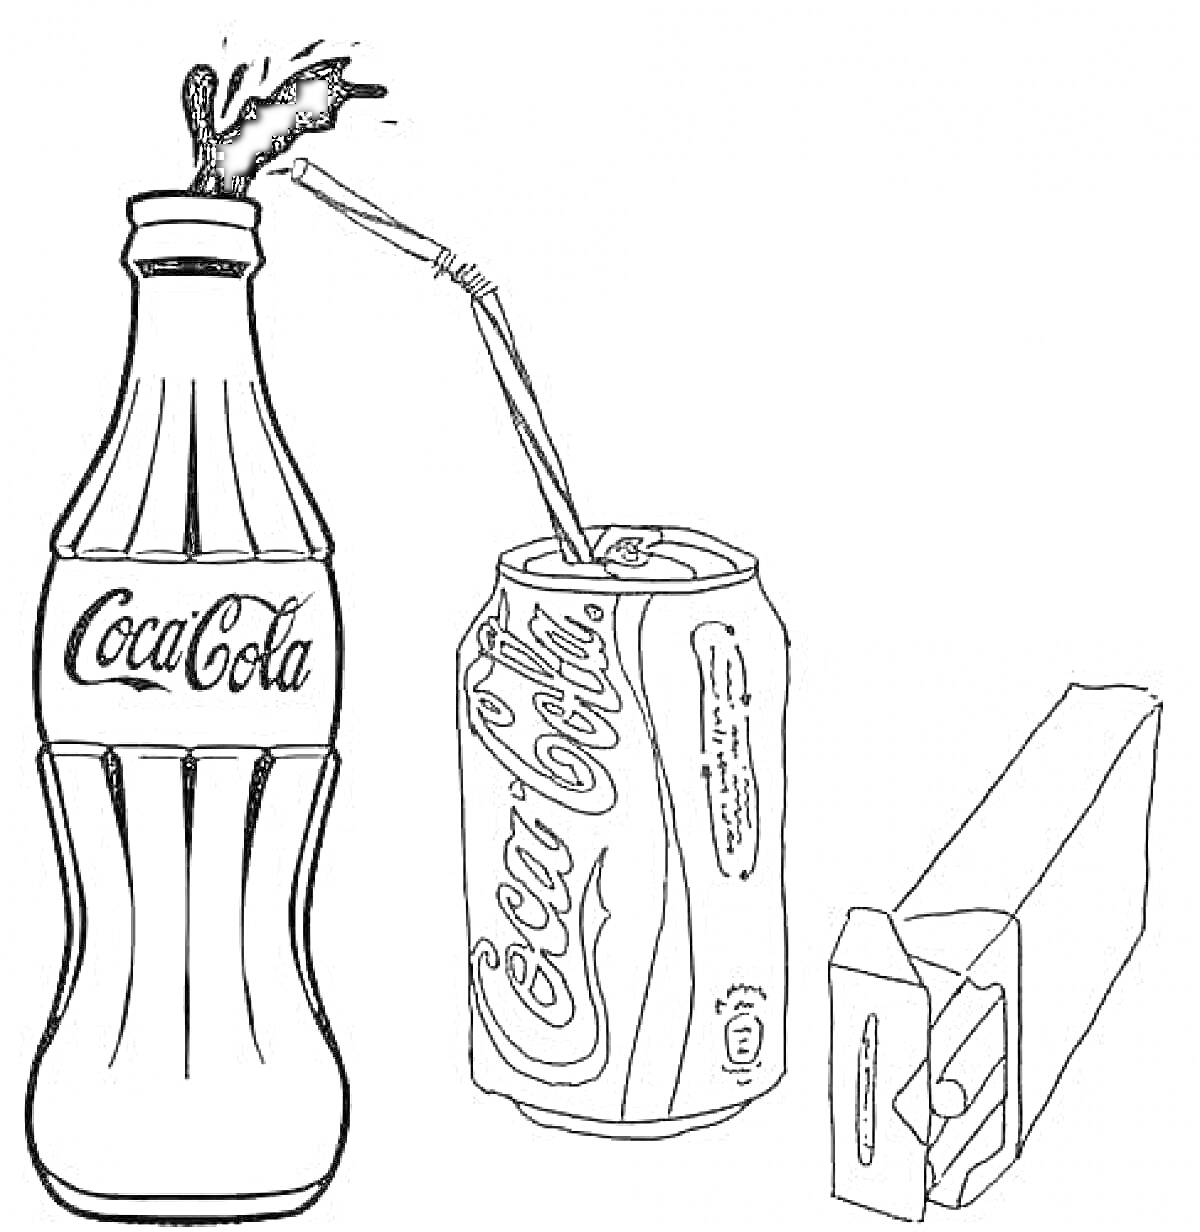 Бутылка Кока Колы, банка Кока Колы с соломинкой и пачка сигарет